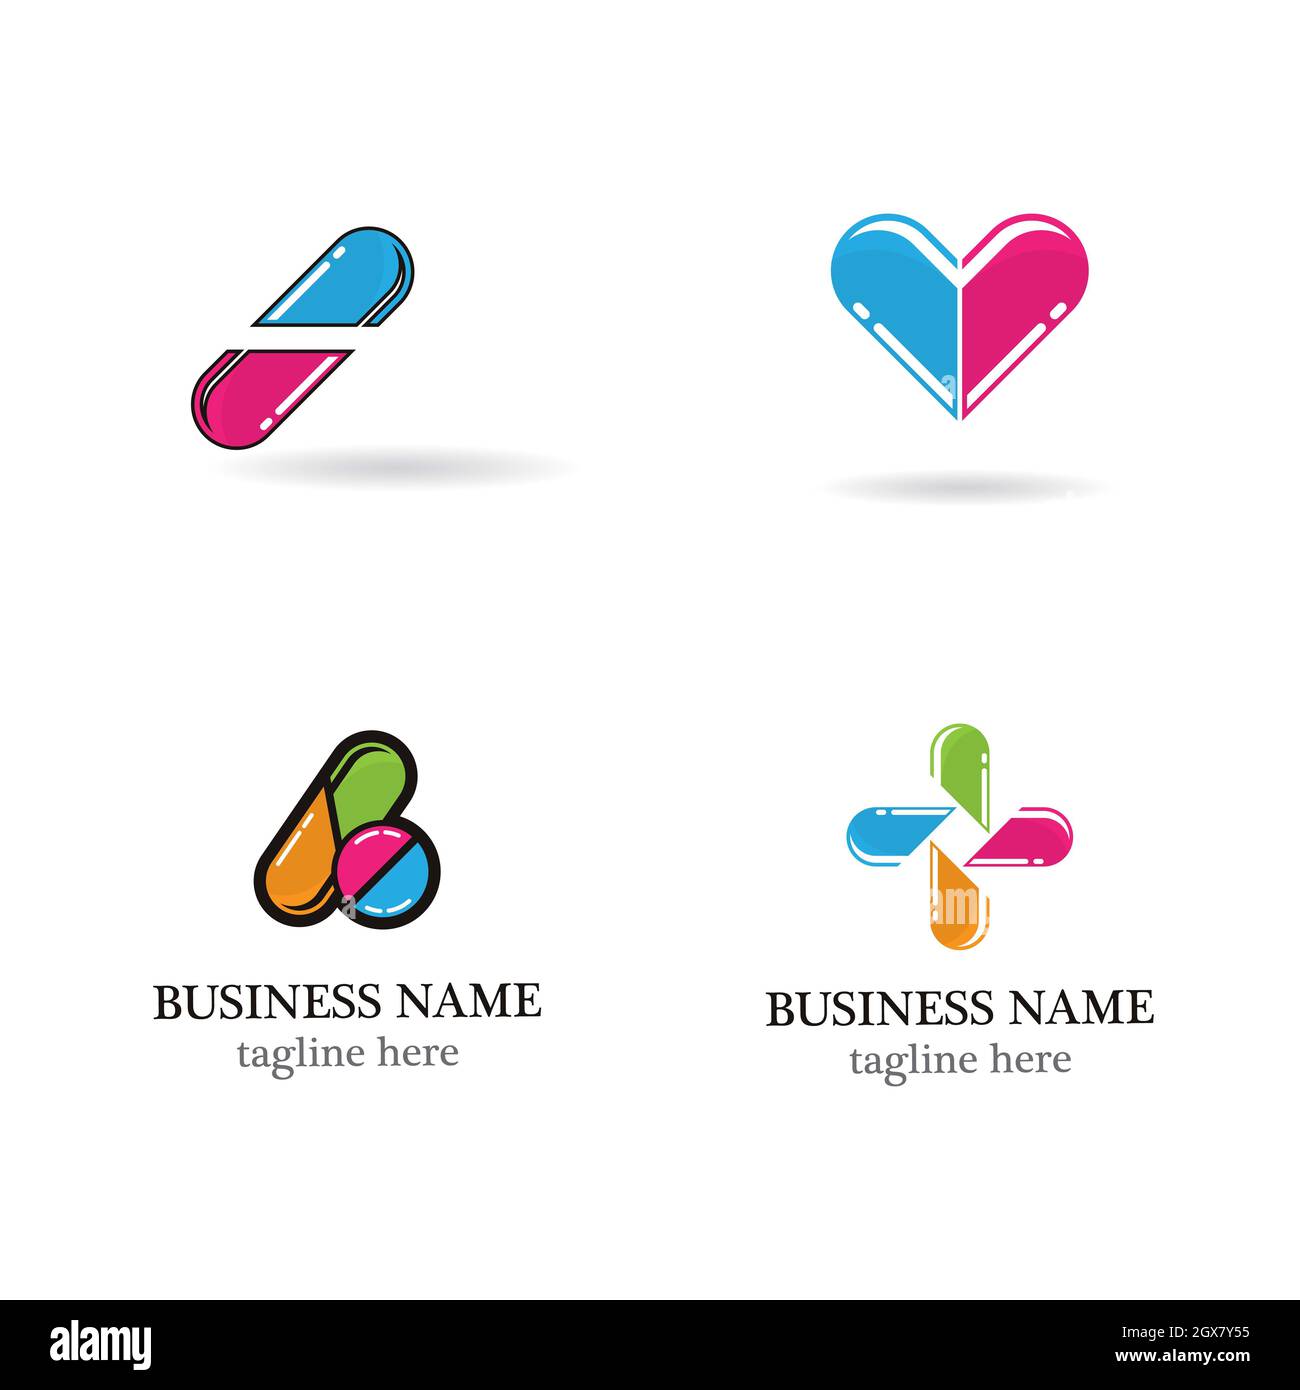 Modèle de logo de la pharmacie – ensemble d'icônes vectorielles Banque D'Images